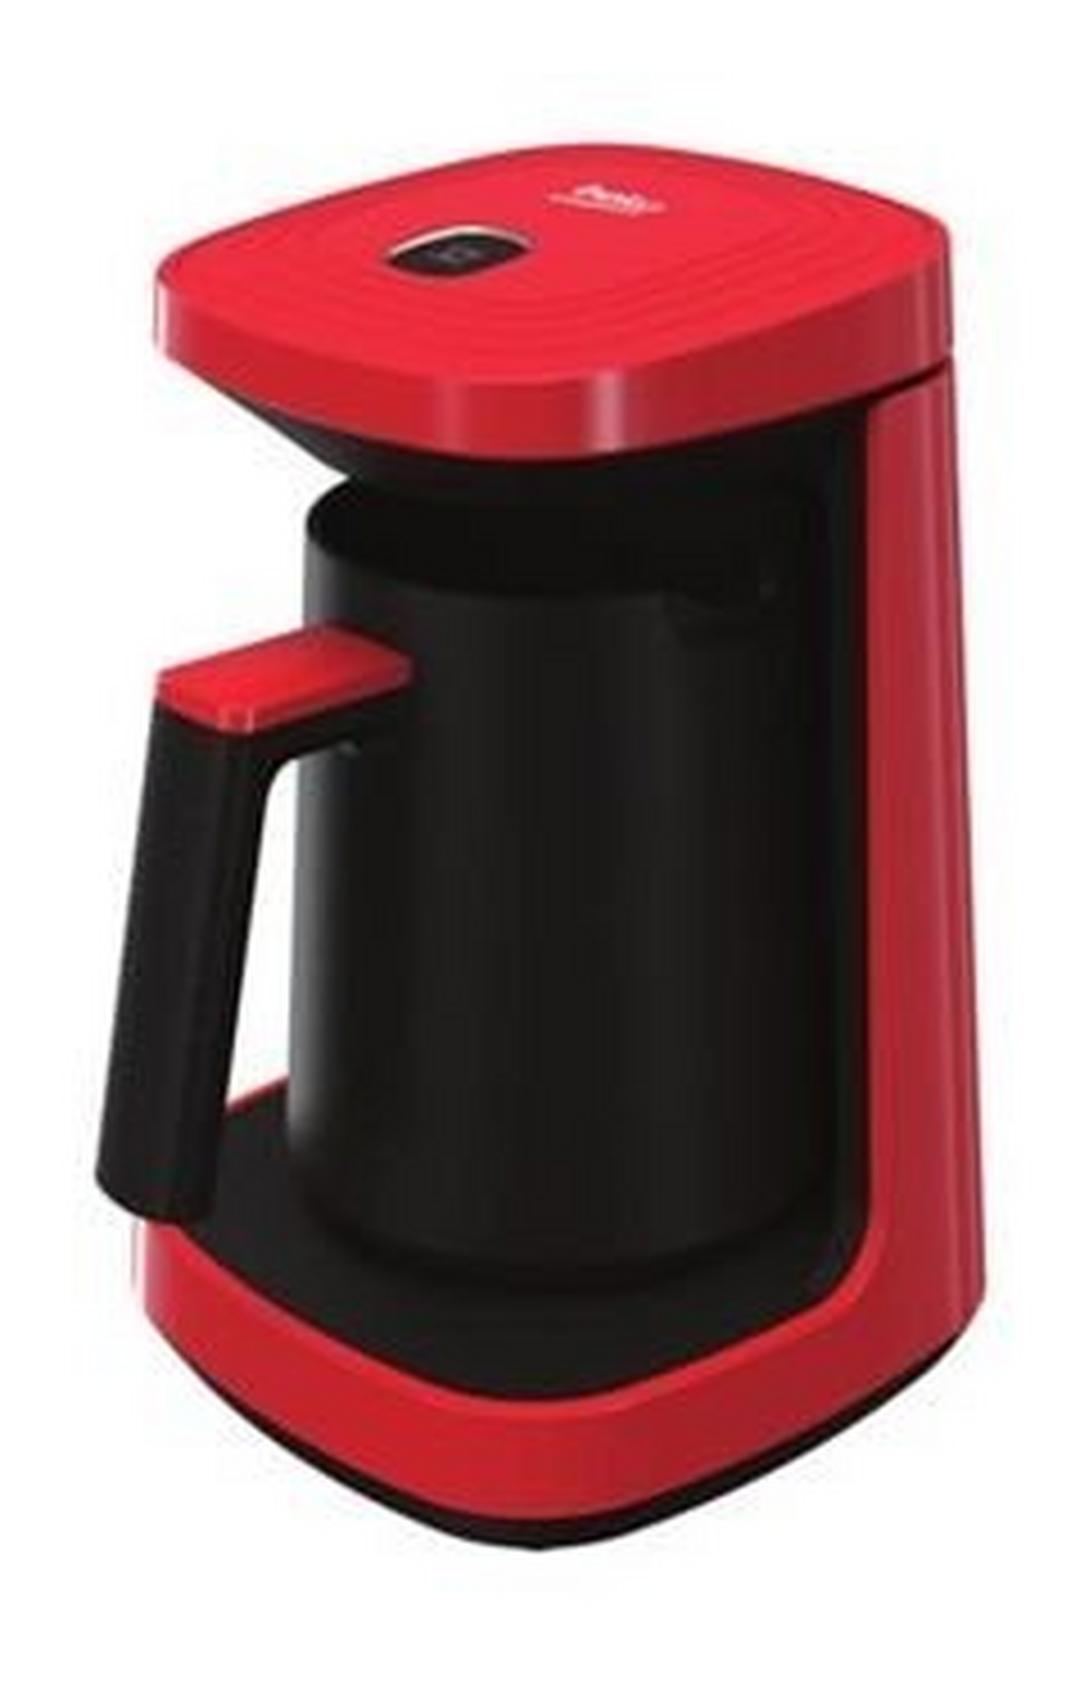 ماكينة القهوة التركية بيكو ٥٠٠-٦٠٠ واط من بيكو - أحمر